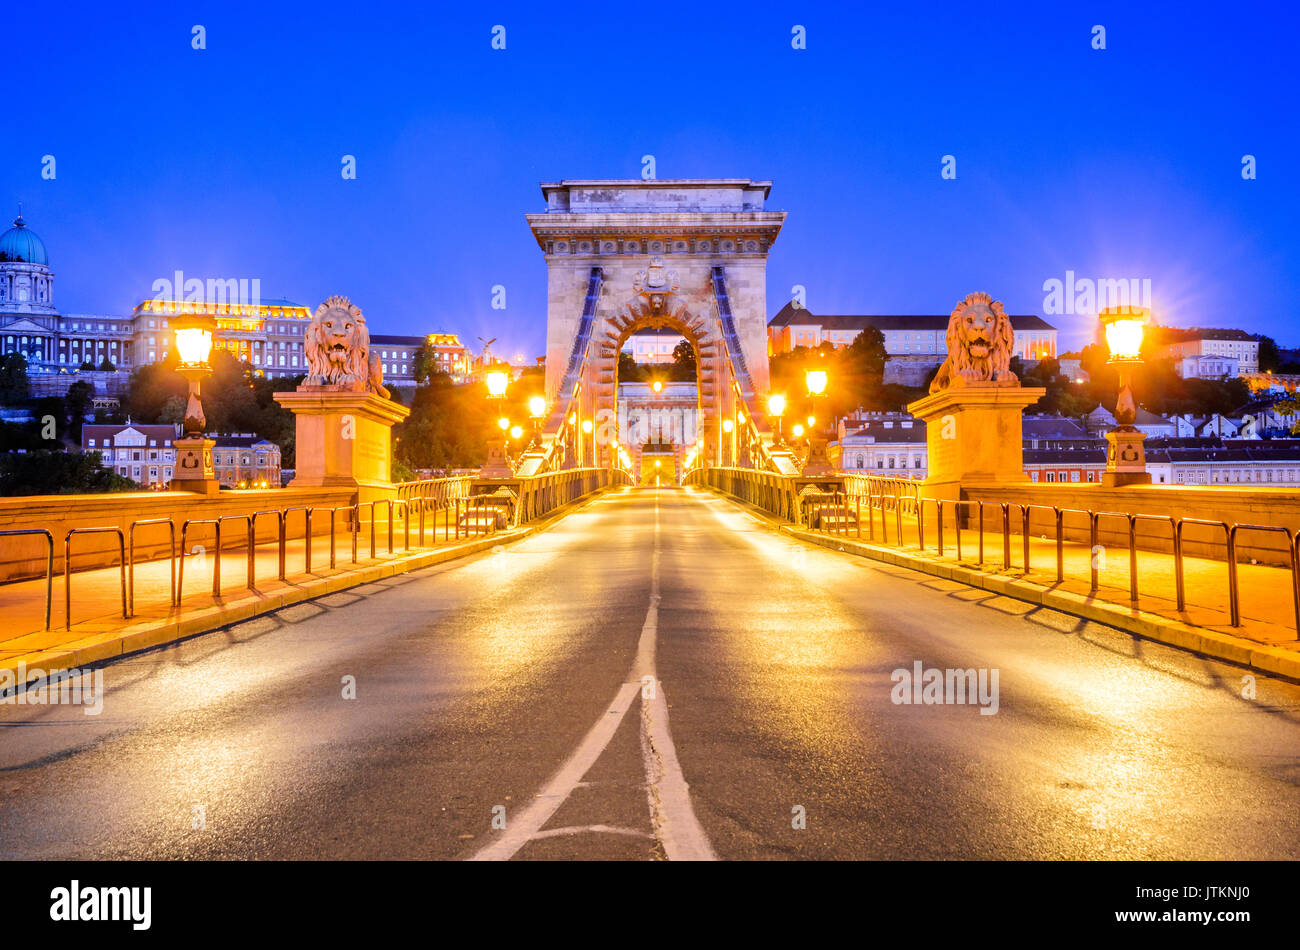 Budapest, Hongrie - Pont des chaînes Széchenyi lanchid. suspension, qui s'étend sur le Danube entre Buda et Pest, dans la capitale hongroise. Banque D'Images